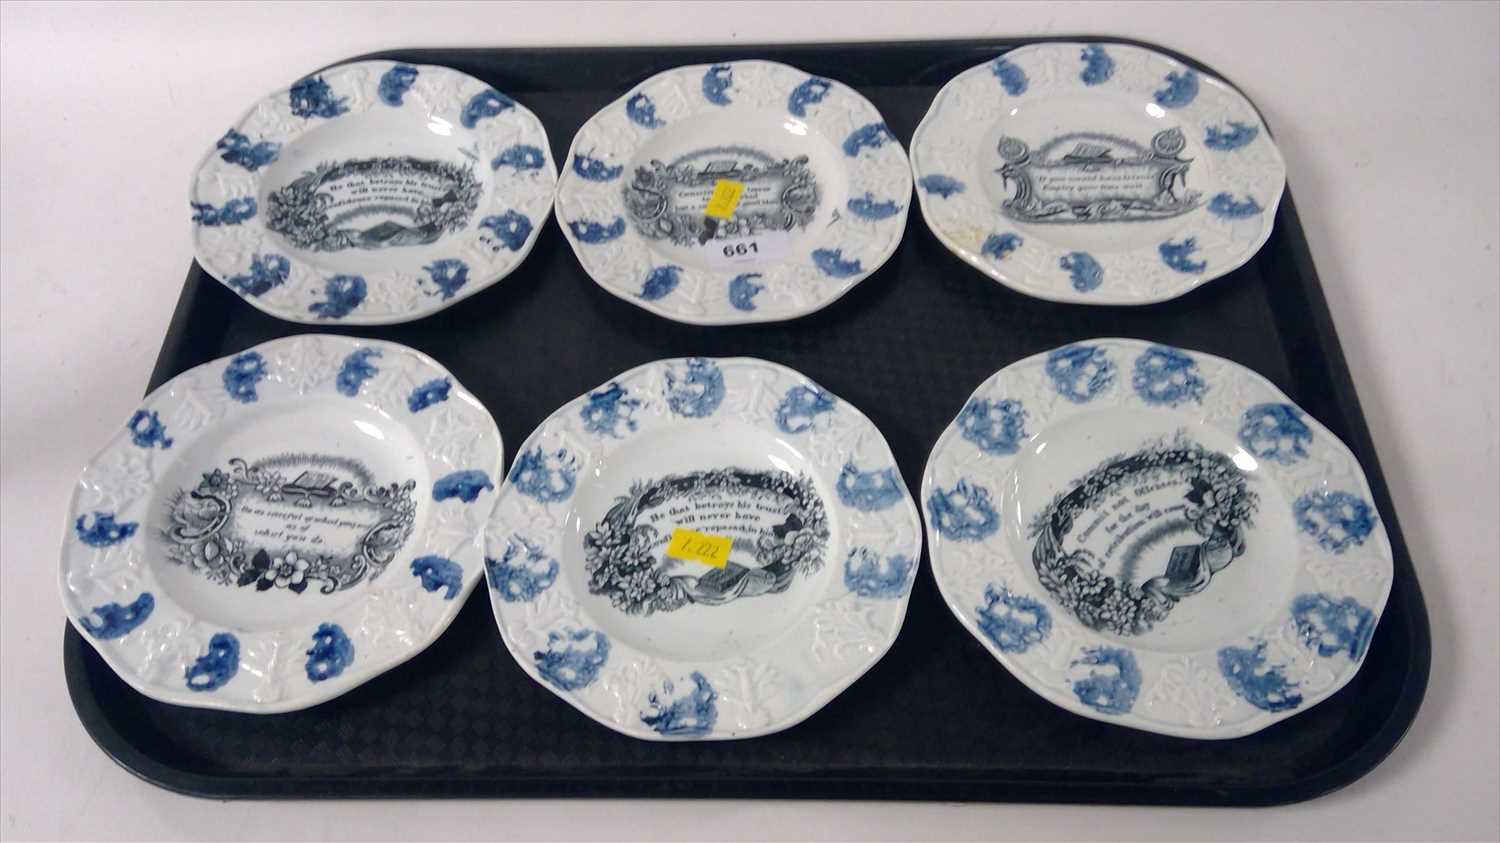 Lot 661 - Nursery plates